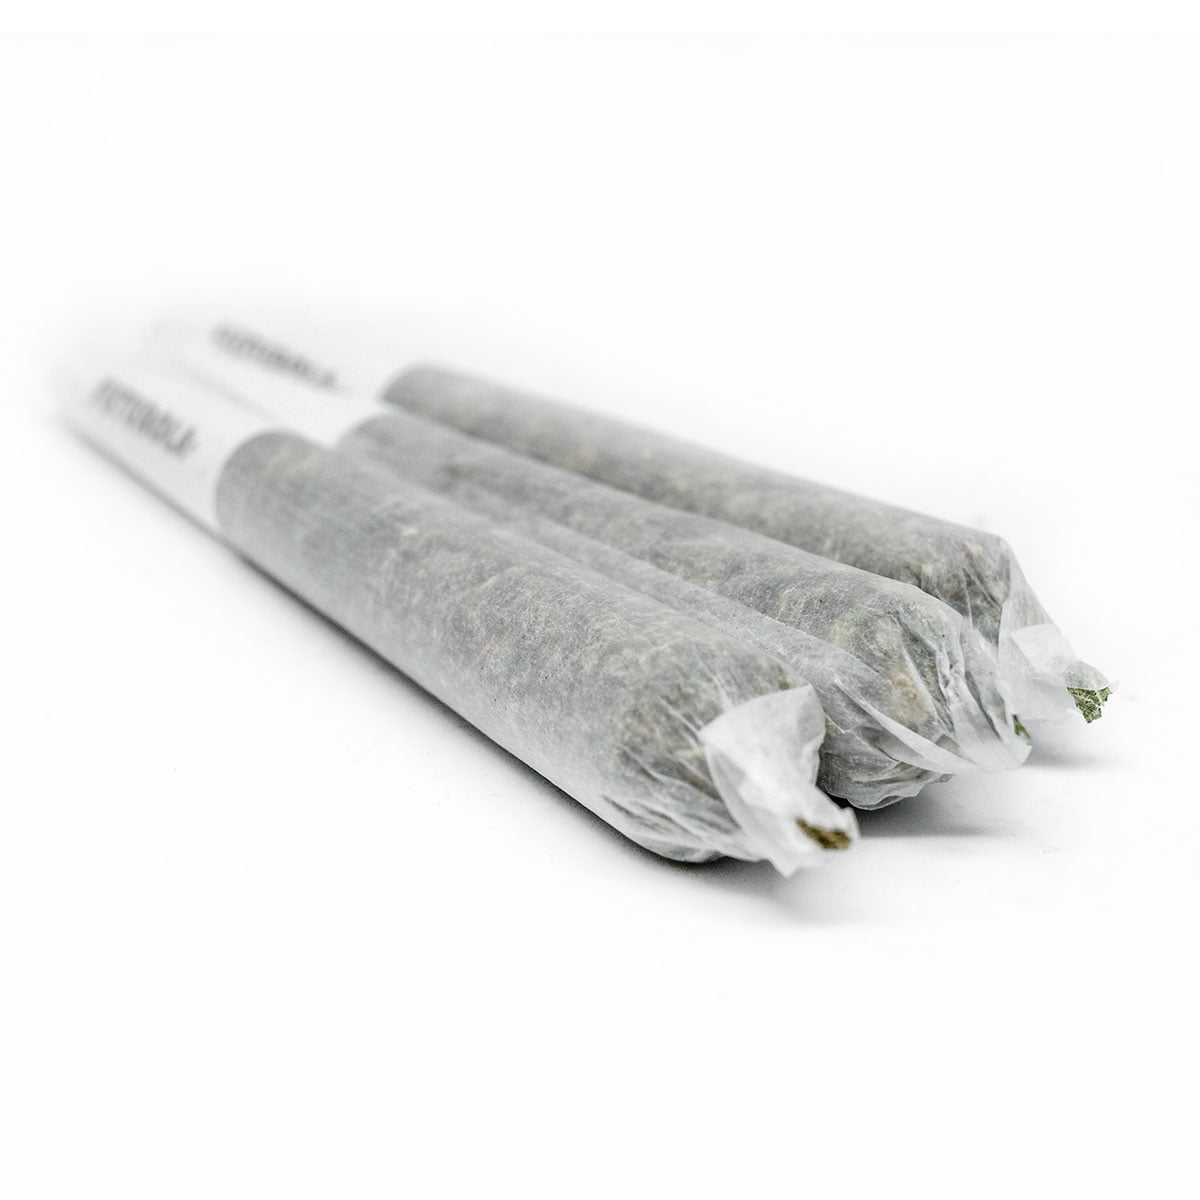 一流的药房提供三捆用塑料仔细包装的 Pre Rolls-10 Regular，陈列在白色的表面上。